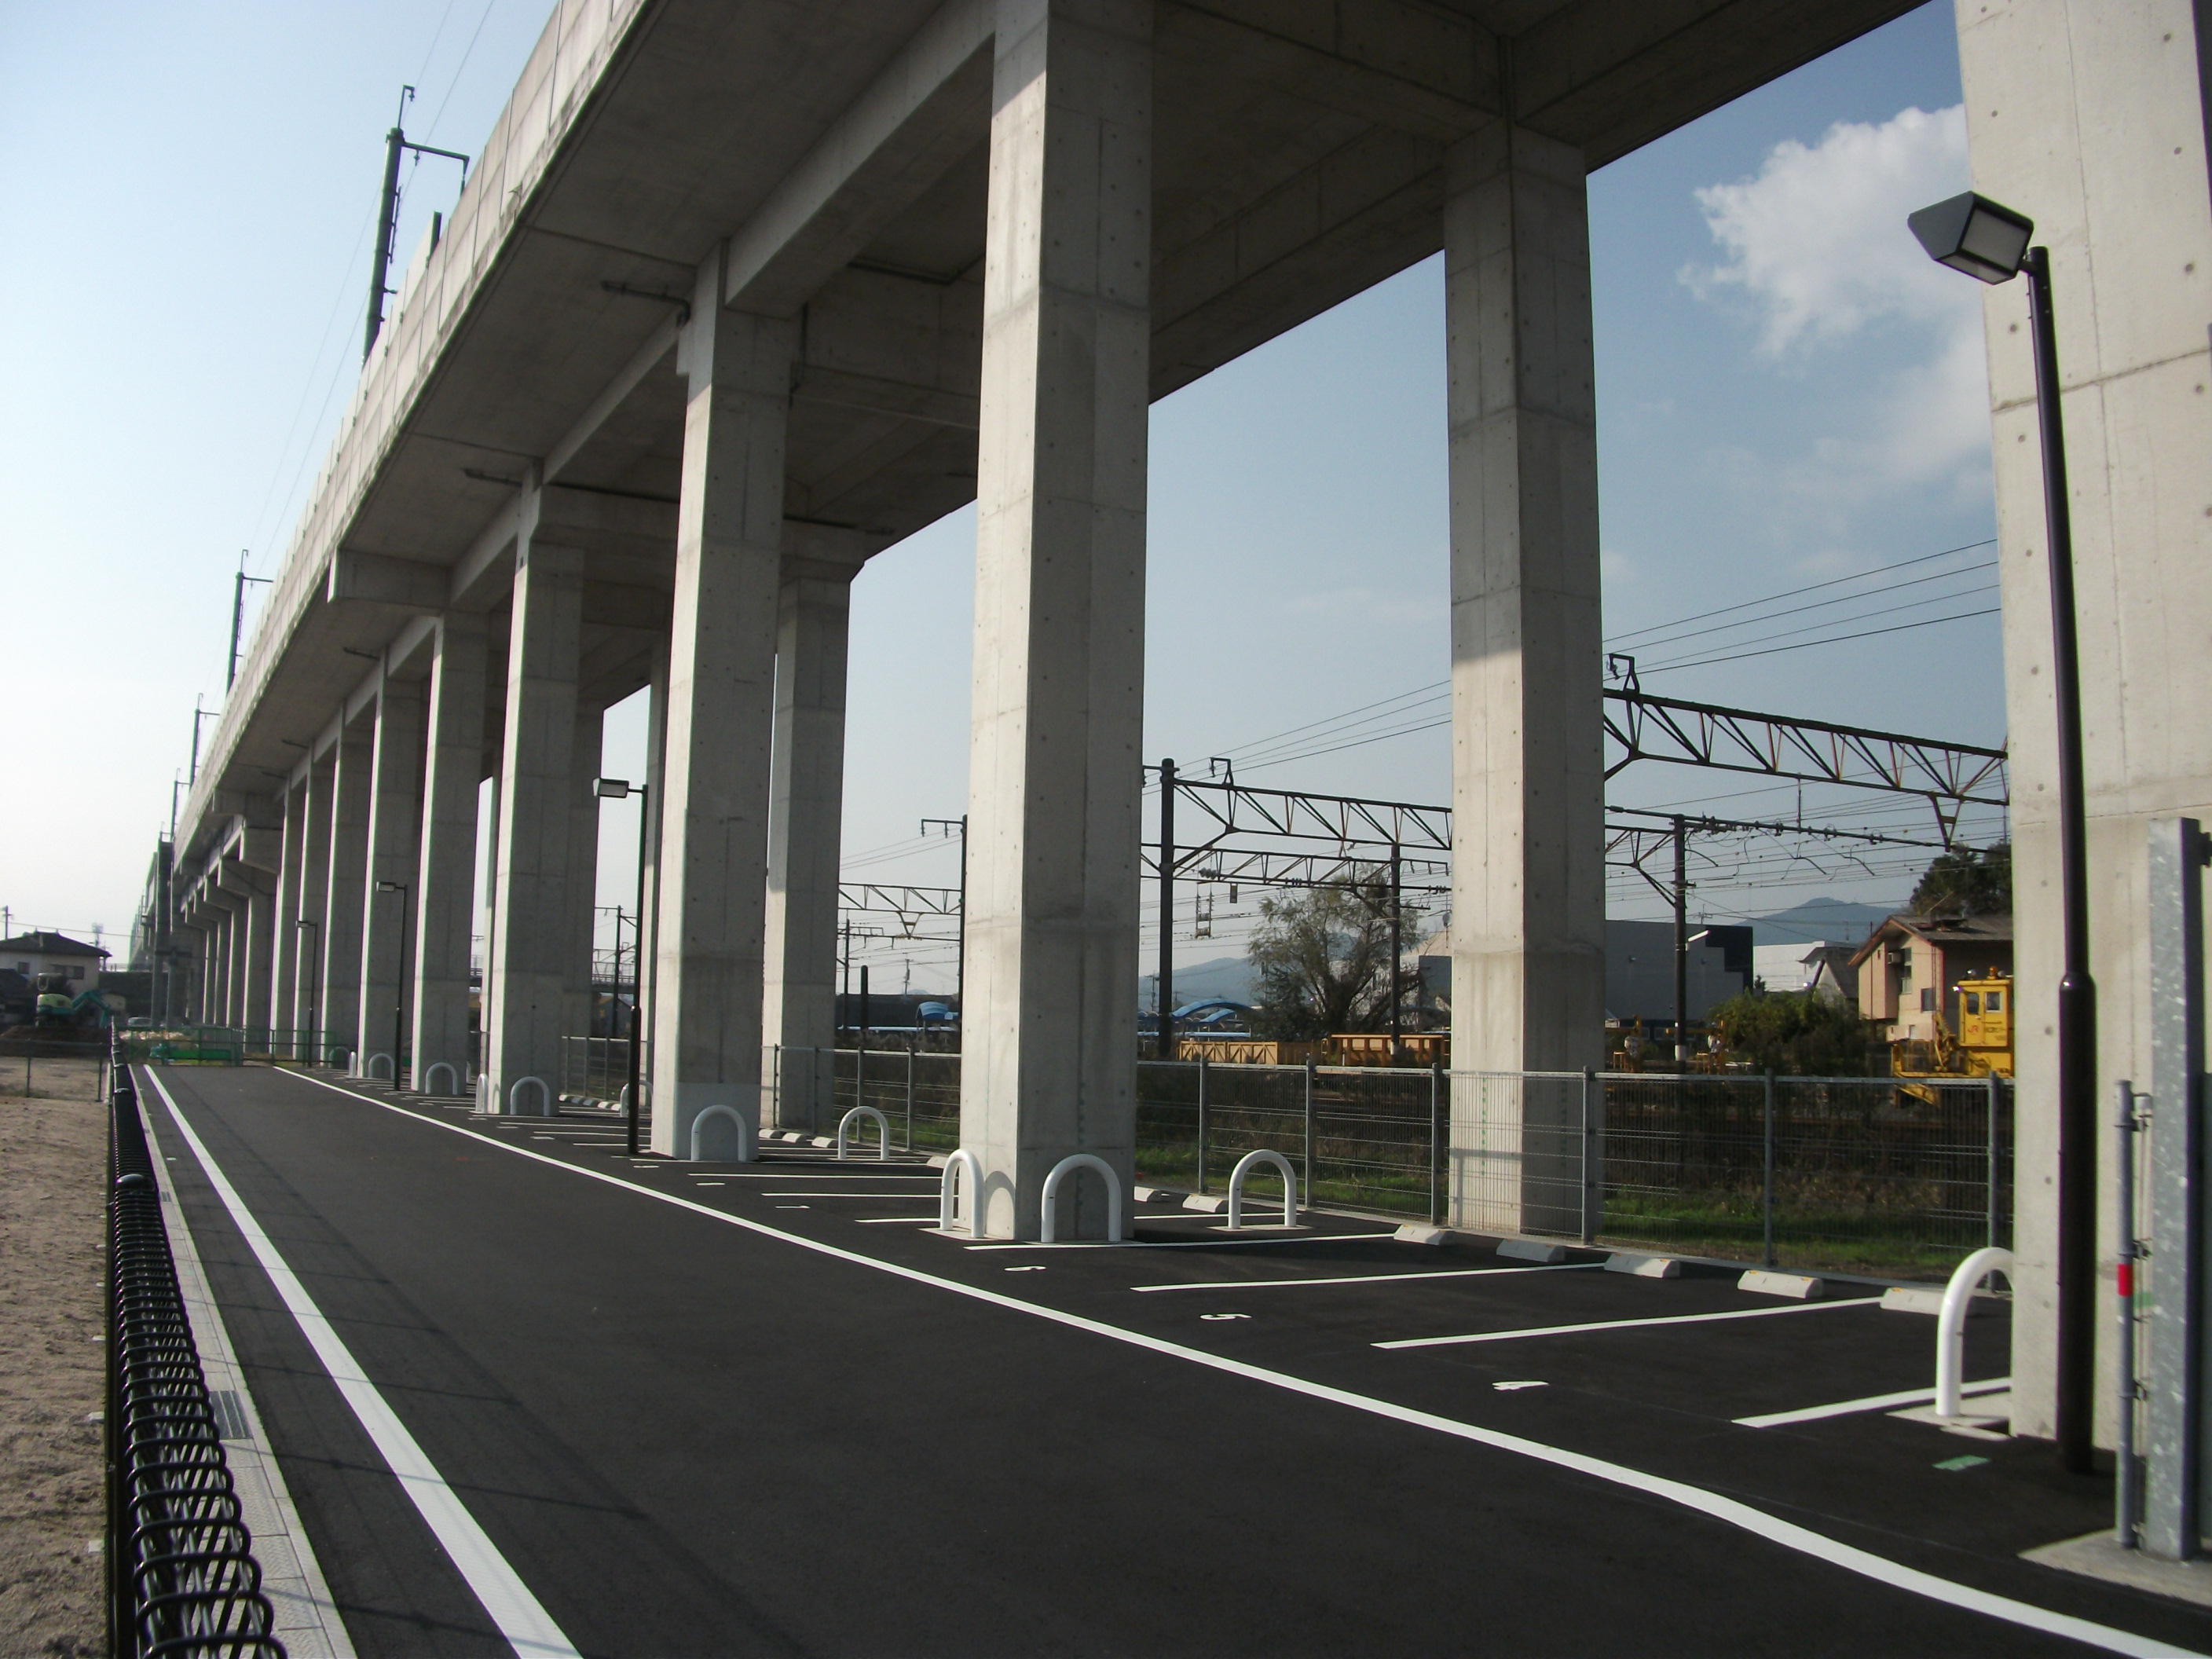 熊本都市圏パークアンドライド駐車場マップ 更新 R3 熊本県ホームページ